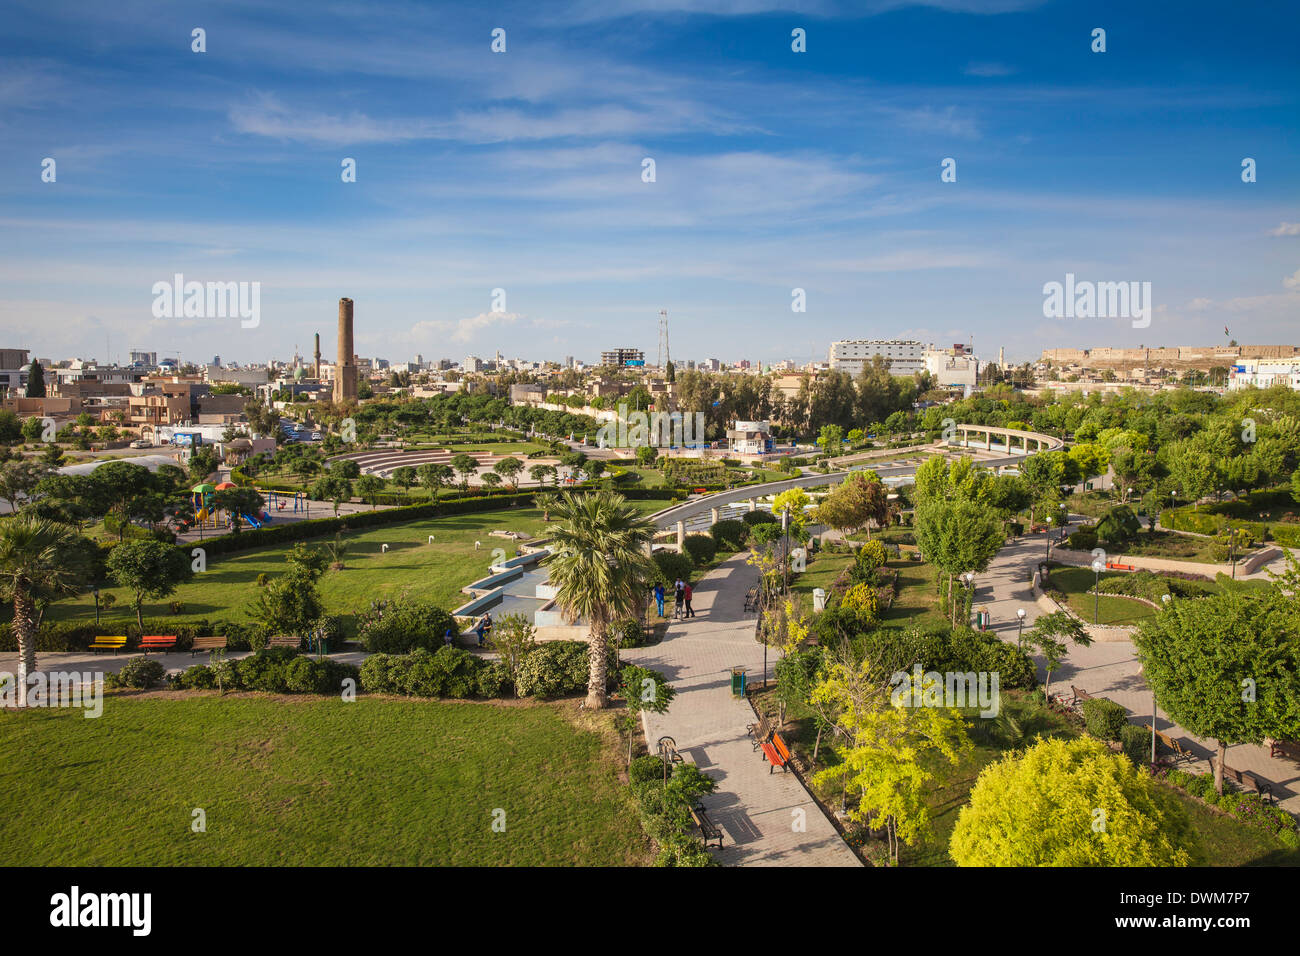 Vue aérienne du parc Minare, Erbil, au Kurdistan, Iraq, Middle East Banque D'Images